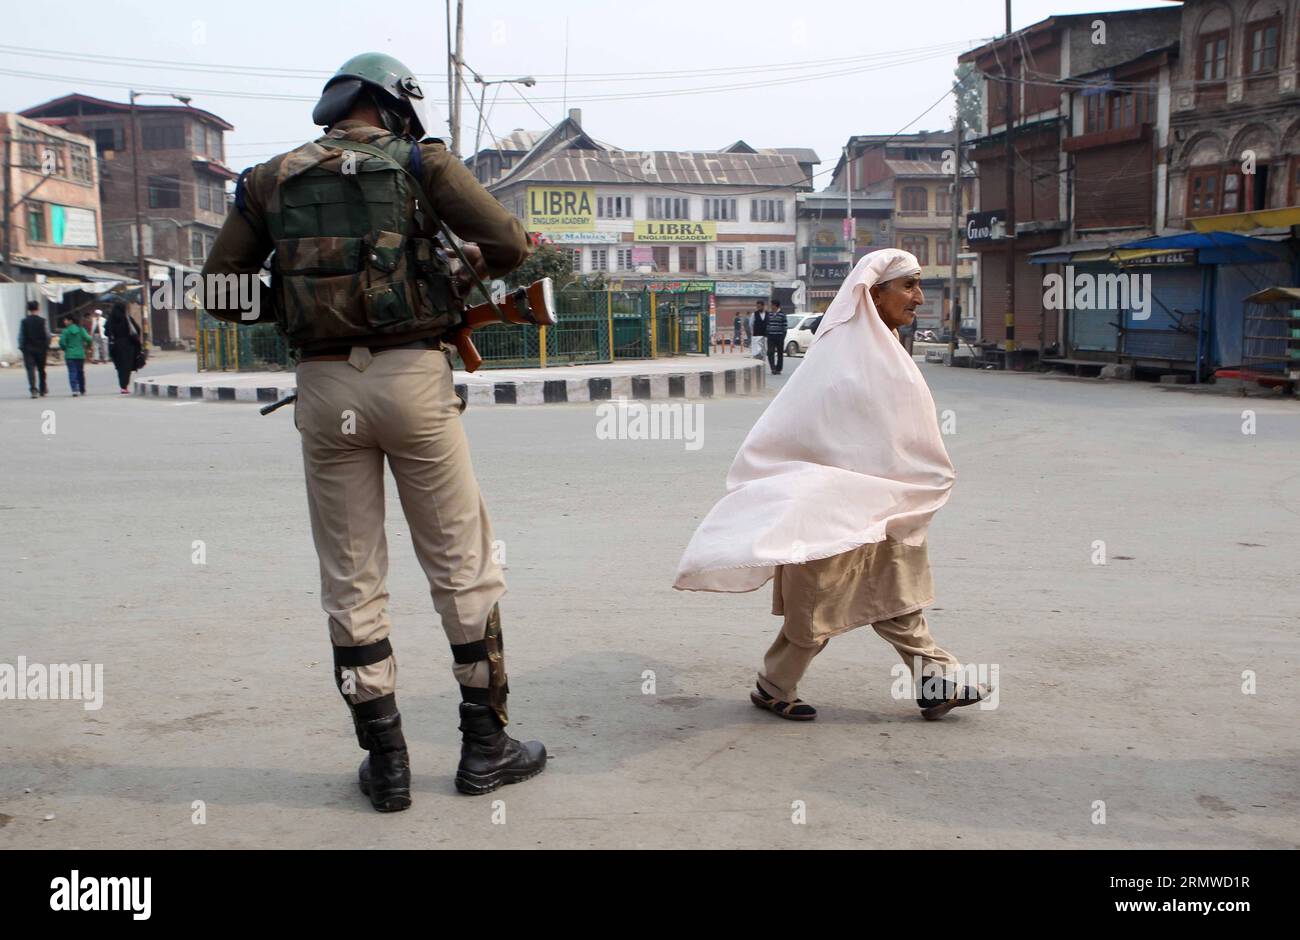 (141023) -- SRINAGAR, 23 de octubre de 2014 -- Un soldado paramilitar indio se pone de guardia mientras una mujer musulmana cachemira pasa por delante durante la huelga contra la visita del primer ministro indio Narendra Modi a Srinagar, capital de verano de Cachemira controlada por la India, el 23 de octubre de 2014. Modi llegó a Srinagar el jueves para celebrar el festival hindú de luces con las personas afectadas por las inundaciones. Los grupos separatistas de Cachemira habían convocado una huelga general y protestas contra la visita de los Modi. (Zjy) CACHEMIRA-SRINAGAR-INDIA-PM-VISITA JavedxDar PUBLICATIONxNOTxINxCHN Srinagar OCT 23 2014 a paramilit indio Foto de stock